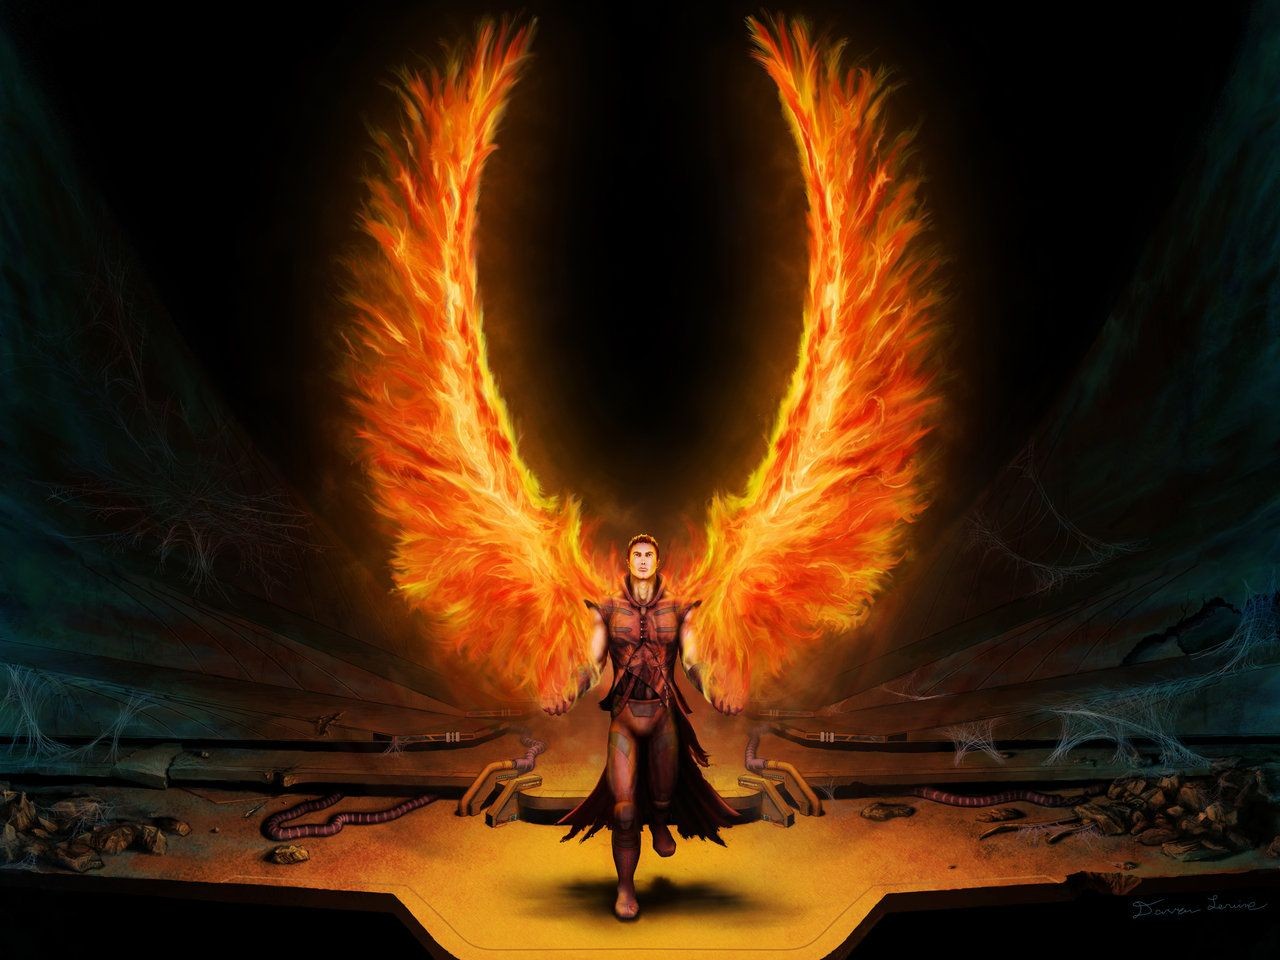 Angels Wings Wallpaper Fire Fantasy Art